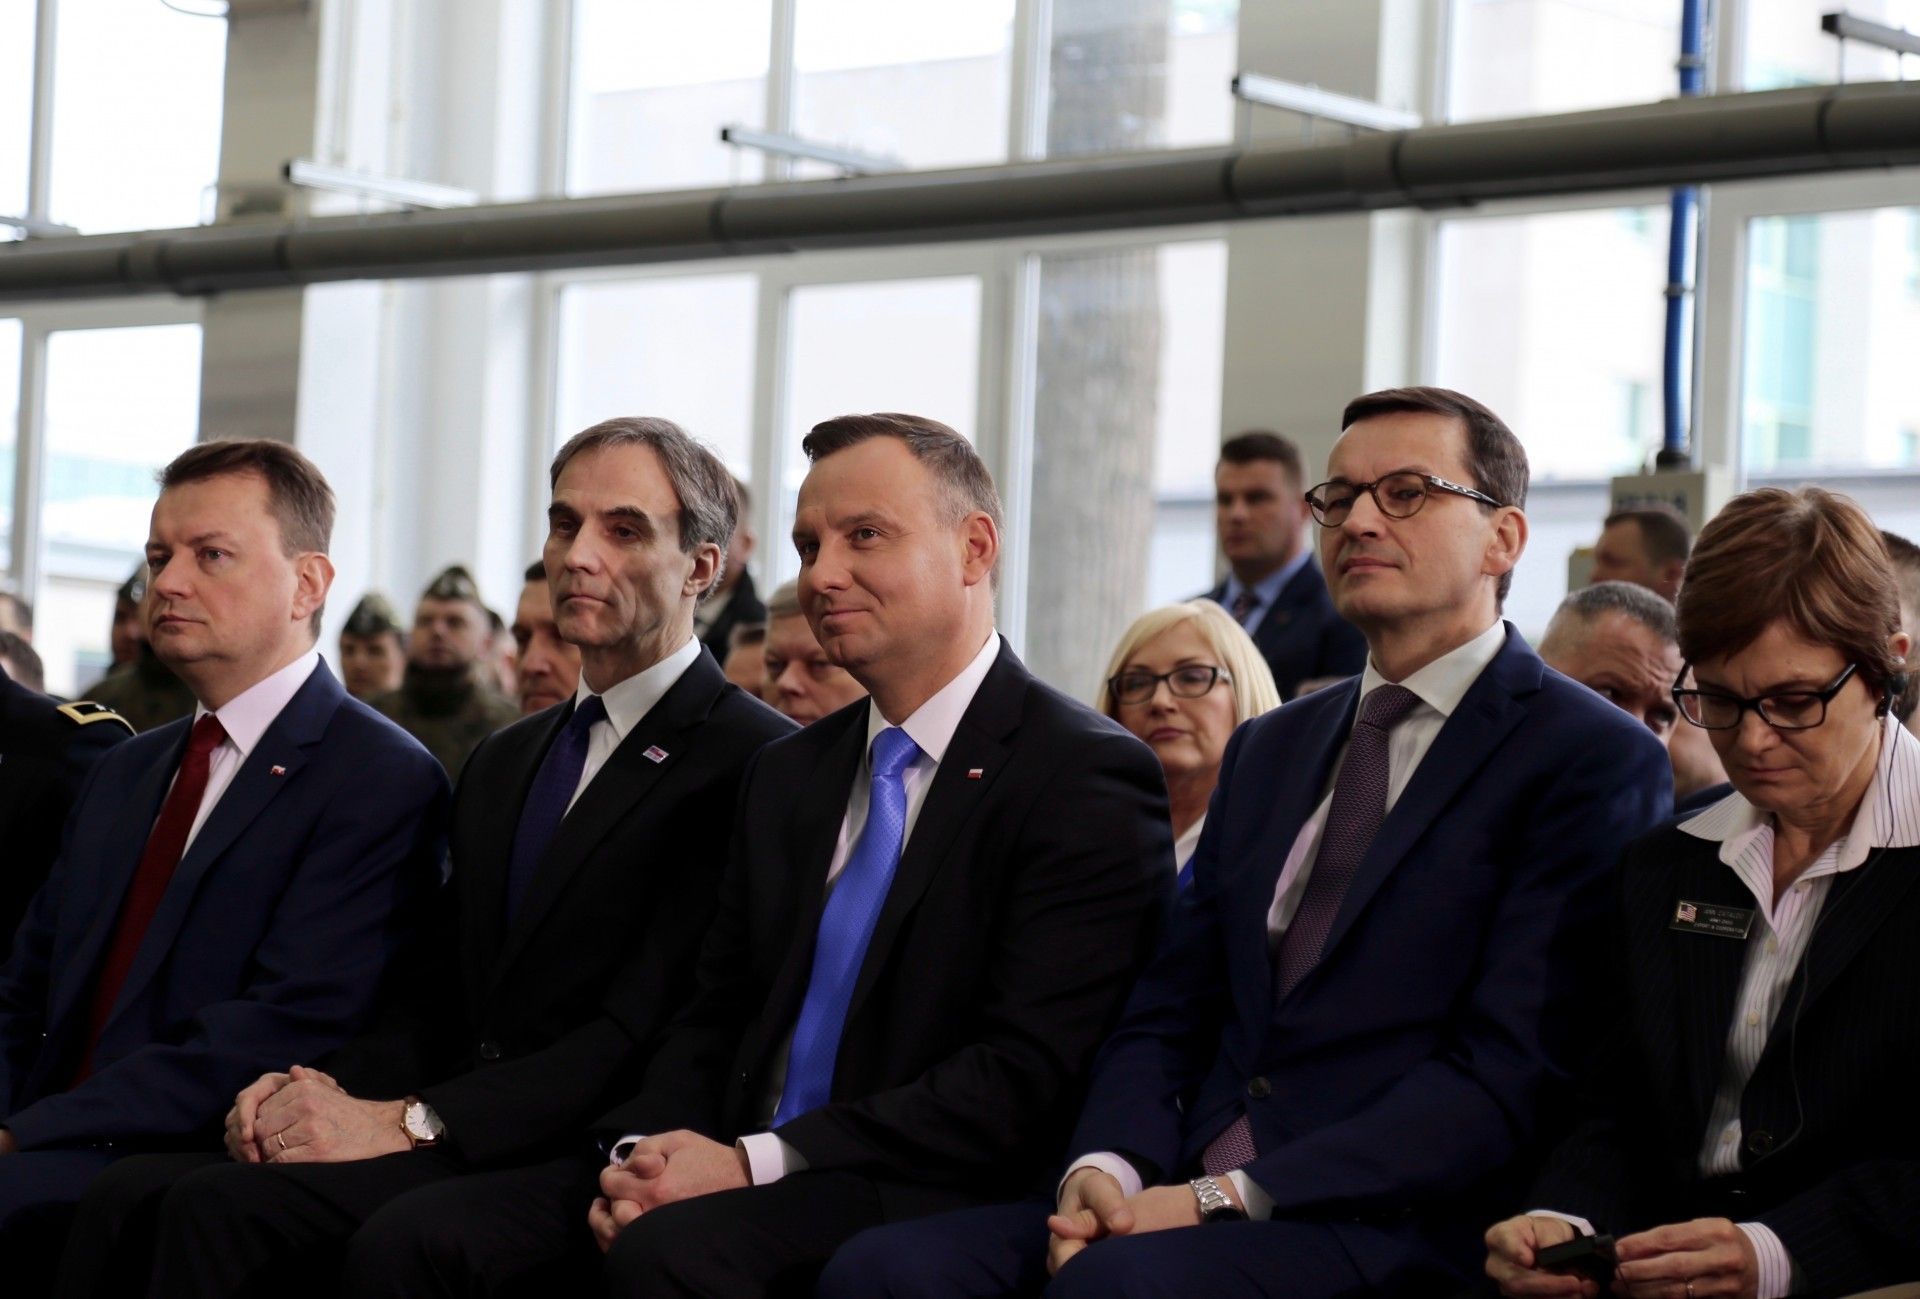 Od lewej: szef MON Mariusz Błaszczak, ambasador USA w Polsce Paul W. Jones, prezydent Andrzej Duda, premier Mateusz Morawiecki oraz Ann Cataldo z Pentagonu. Fot. Marta Rachwalska / Defence24.pl